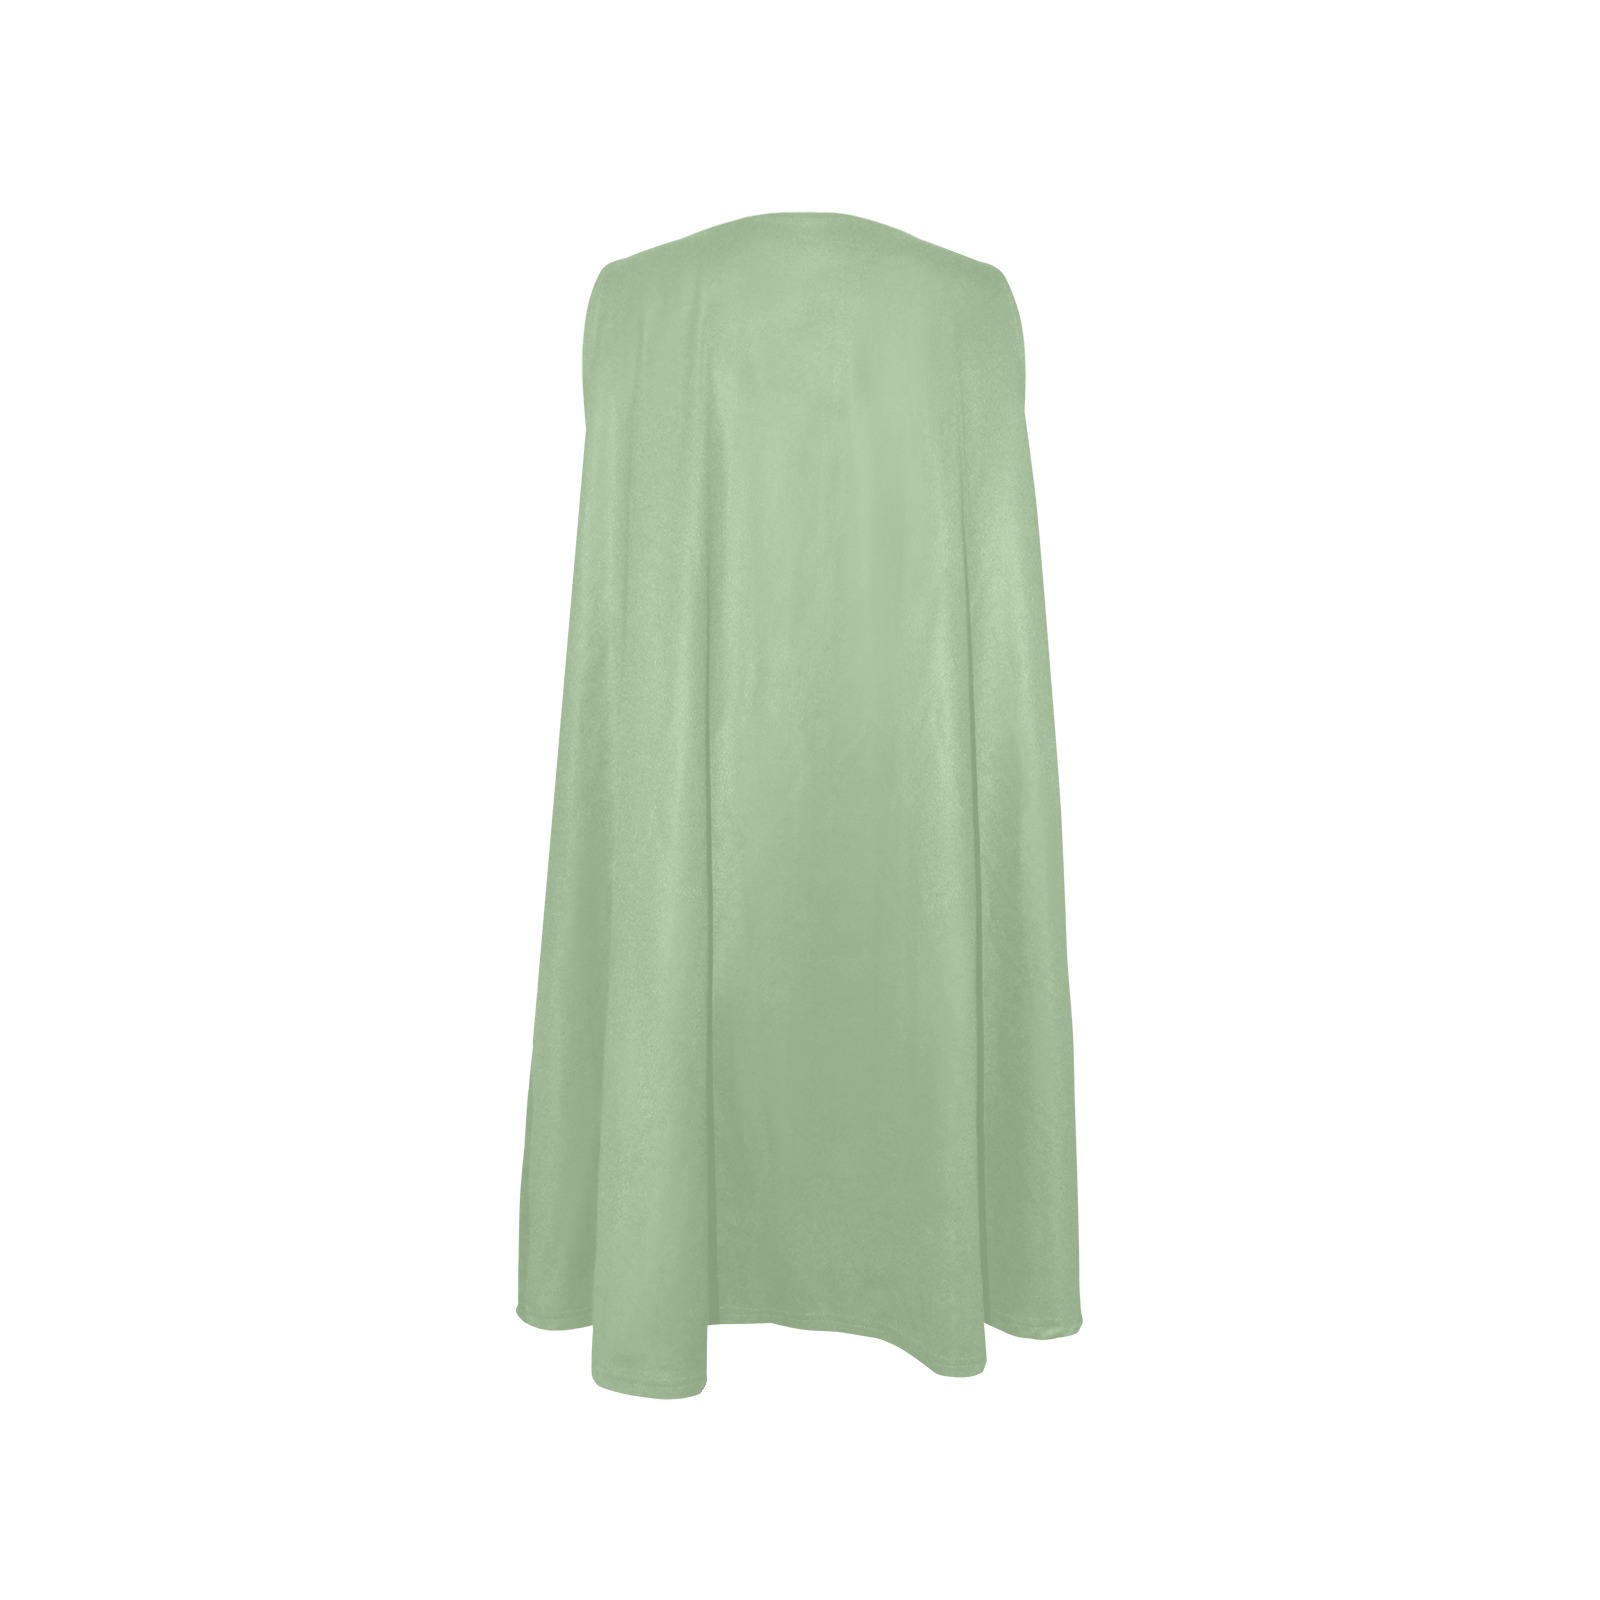 Fair Green Sleeveless A-Line Pocket Dress (Model D57)